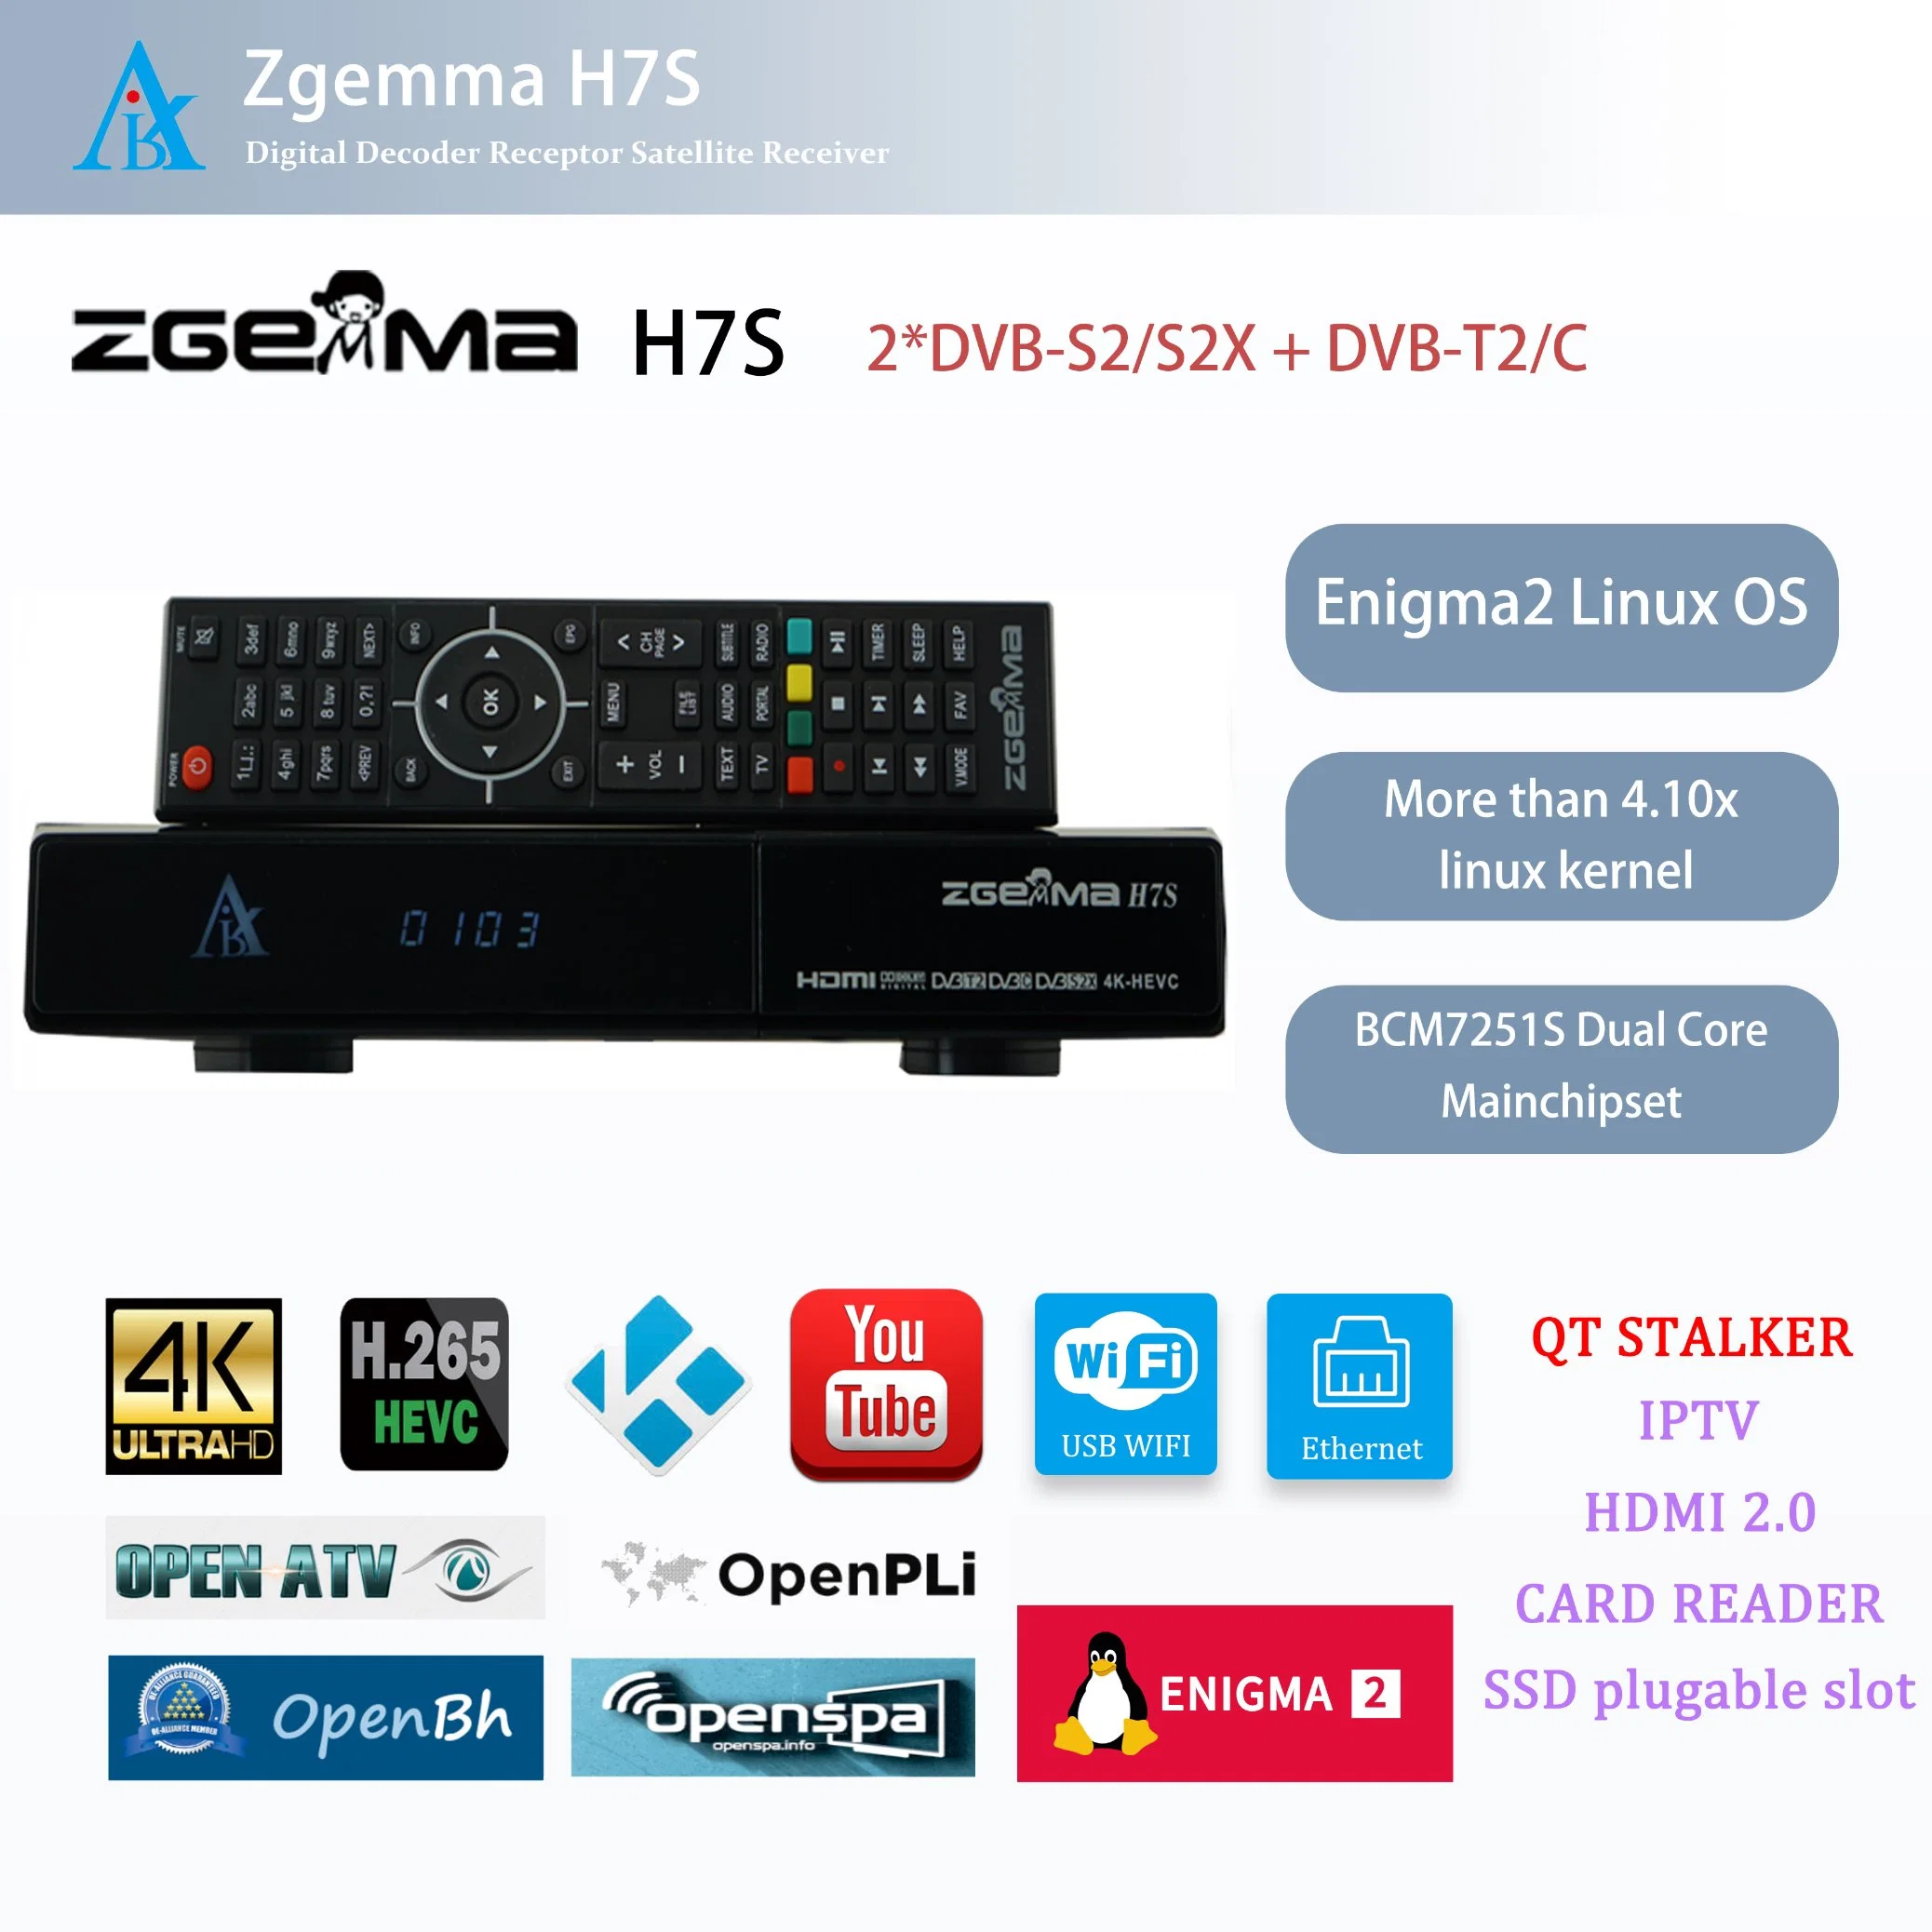 مستقبل تلفزيون مع قنوات فضائية عالي الدقة - Zgemma H7s مع Enigma2 نظام التشغيل Linux و 2*DVB-S2/S2X + DVB-T2/C Hybrid Tuner